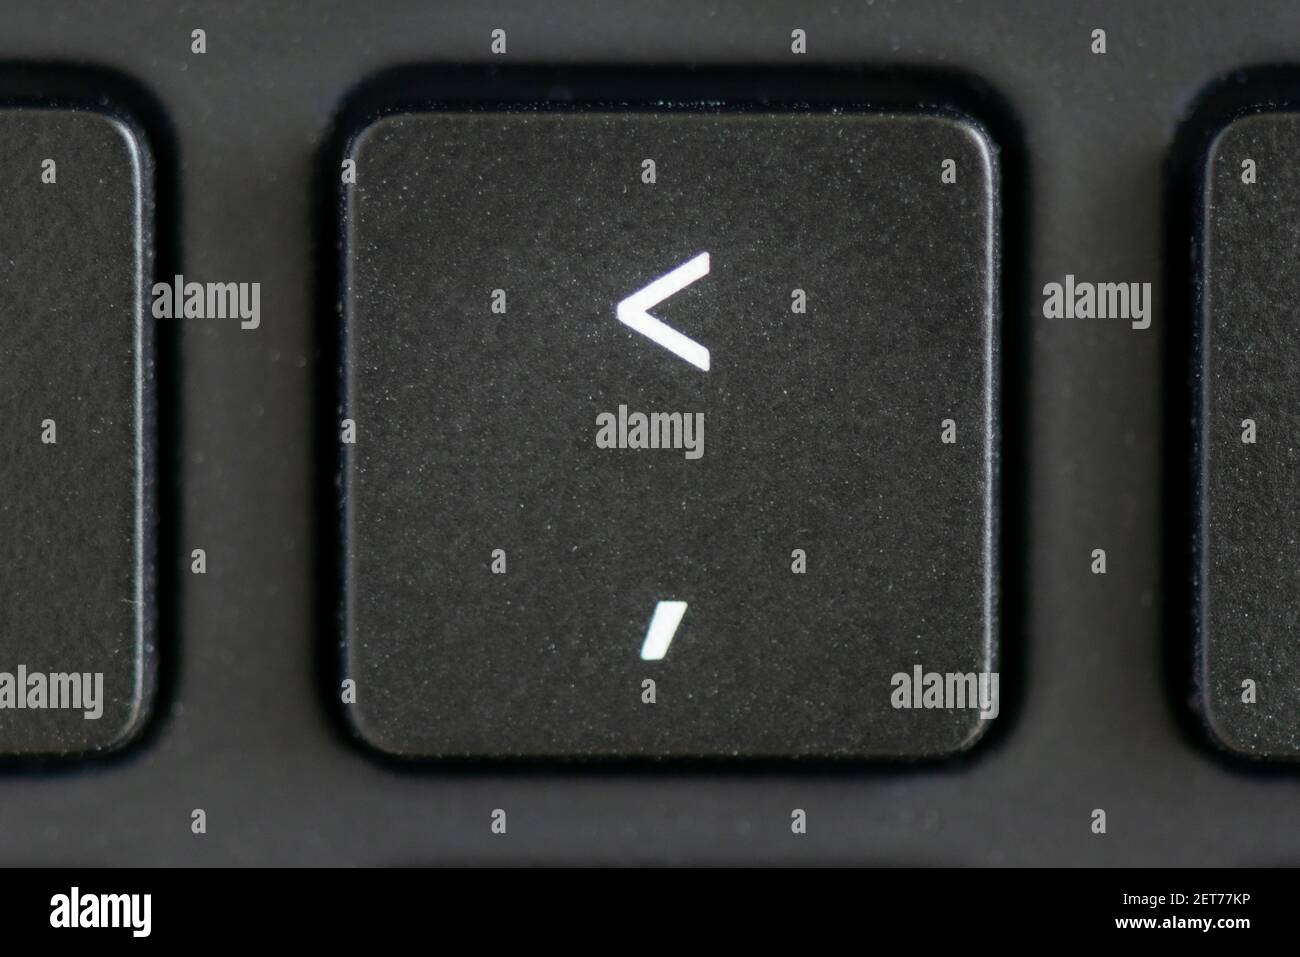 Comma key on a laptop keyboard Stock Photo - Alamy